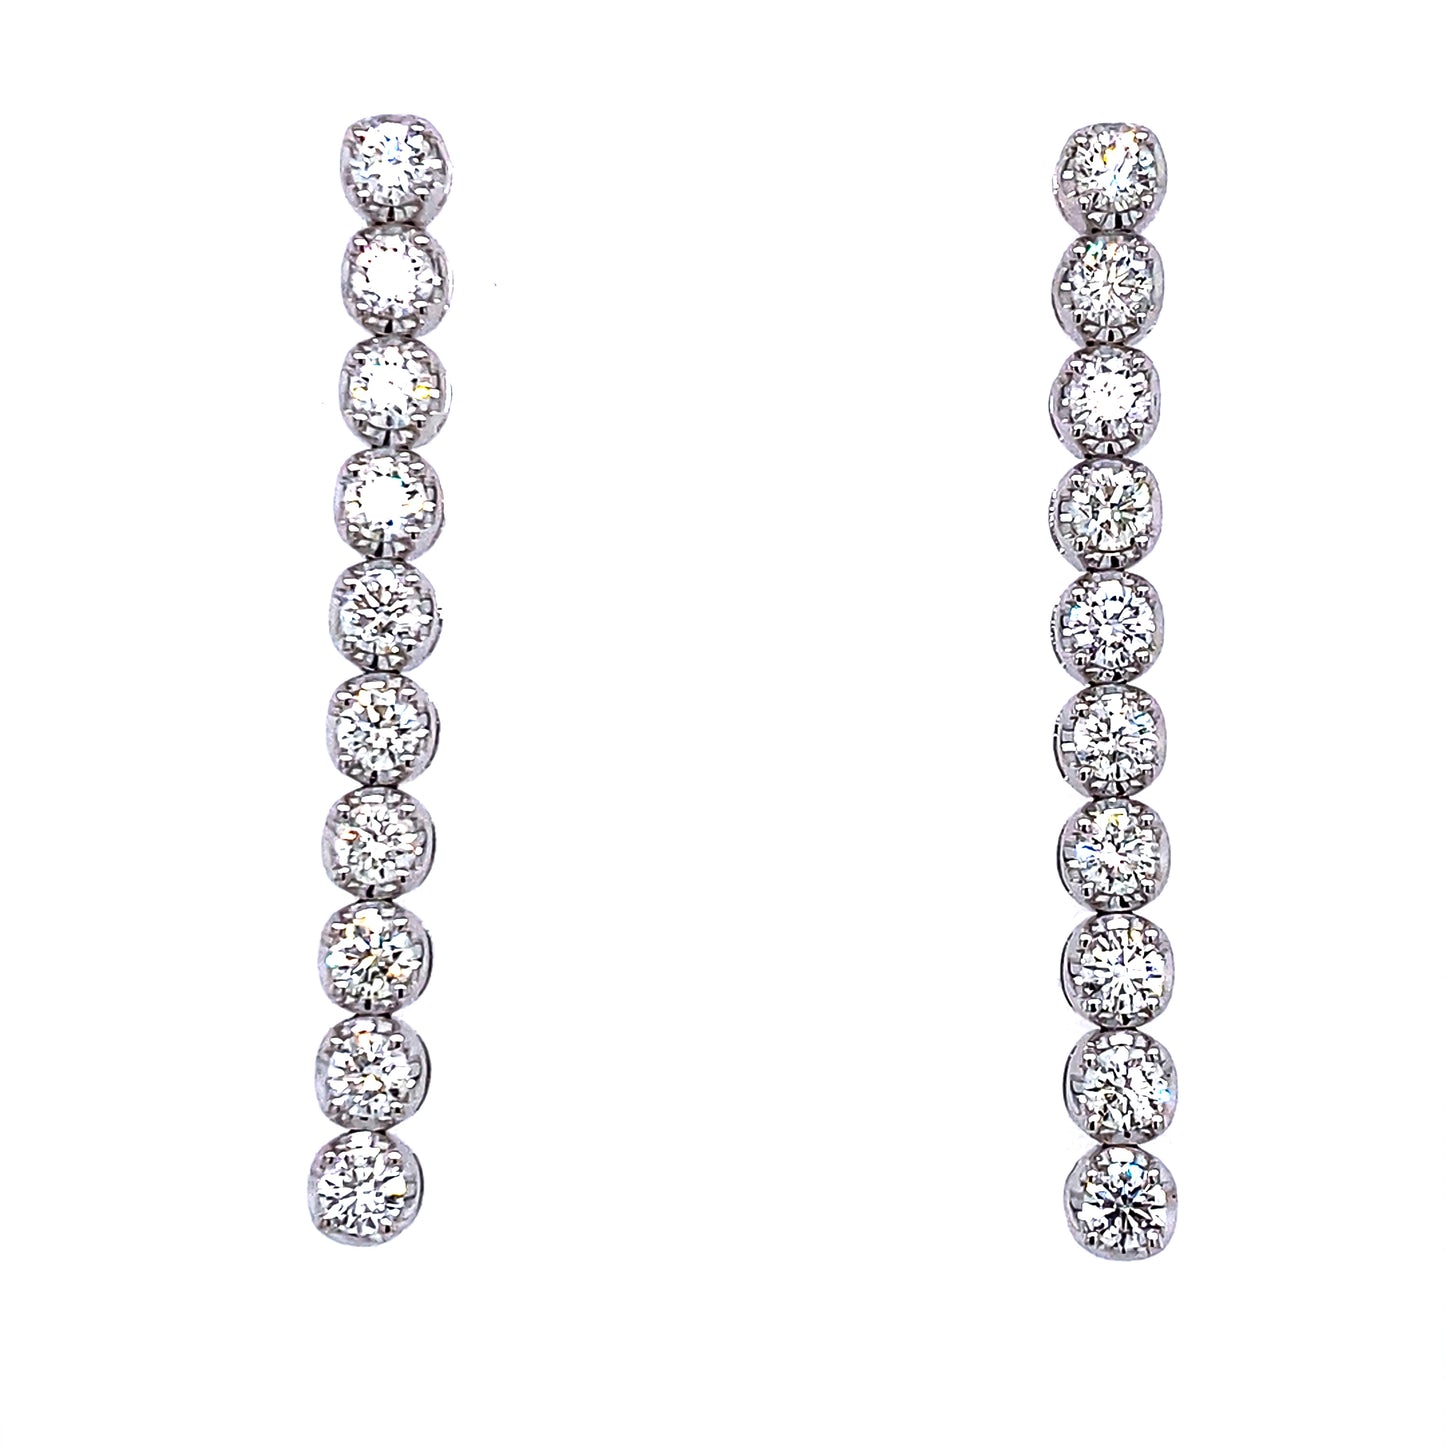 18K WG 1.80 RD Bezel Set Diamonds Tier Earrings